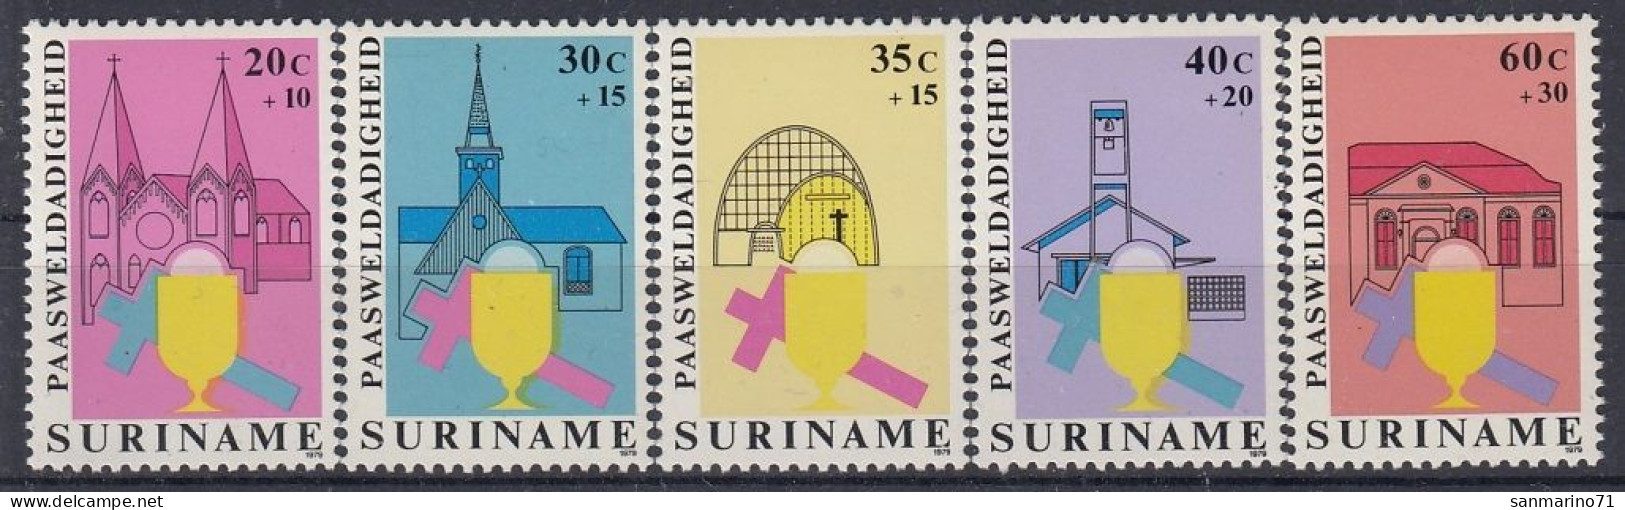 SURINAM 864-868,unused - Easter